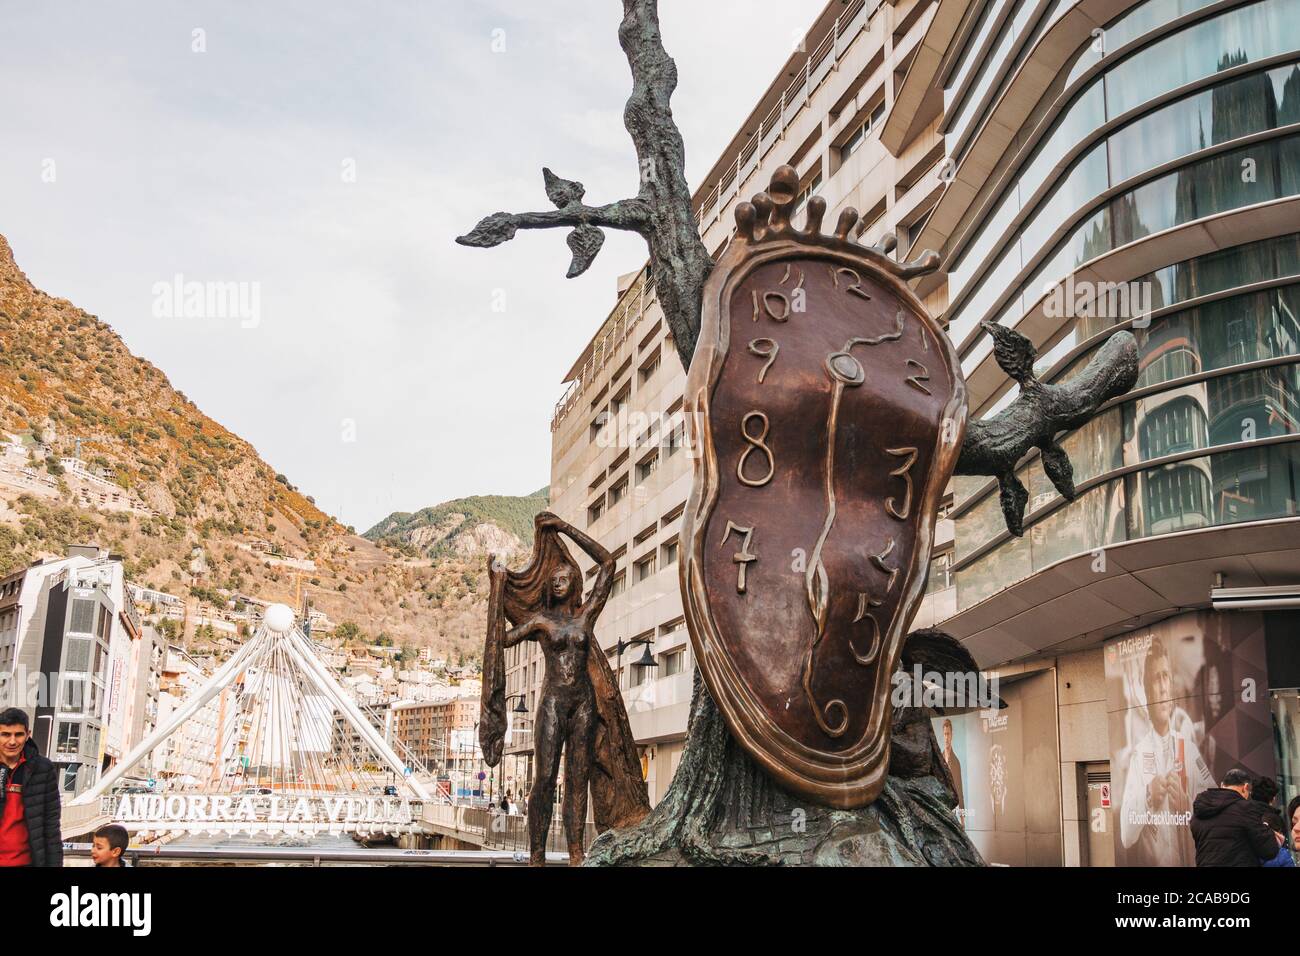 Il Pont de París e la statua di Noblesse du Temps (nobiltà del tempo) Salvador Dalí ad Andorra la Vella, capitale di Andorra Foto Stock